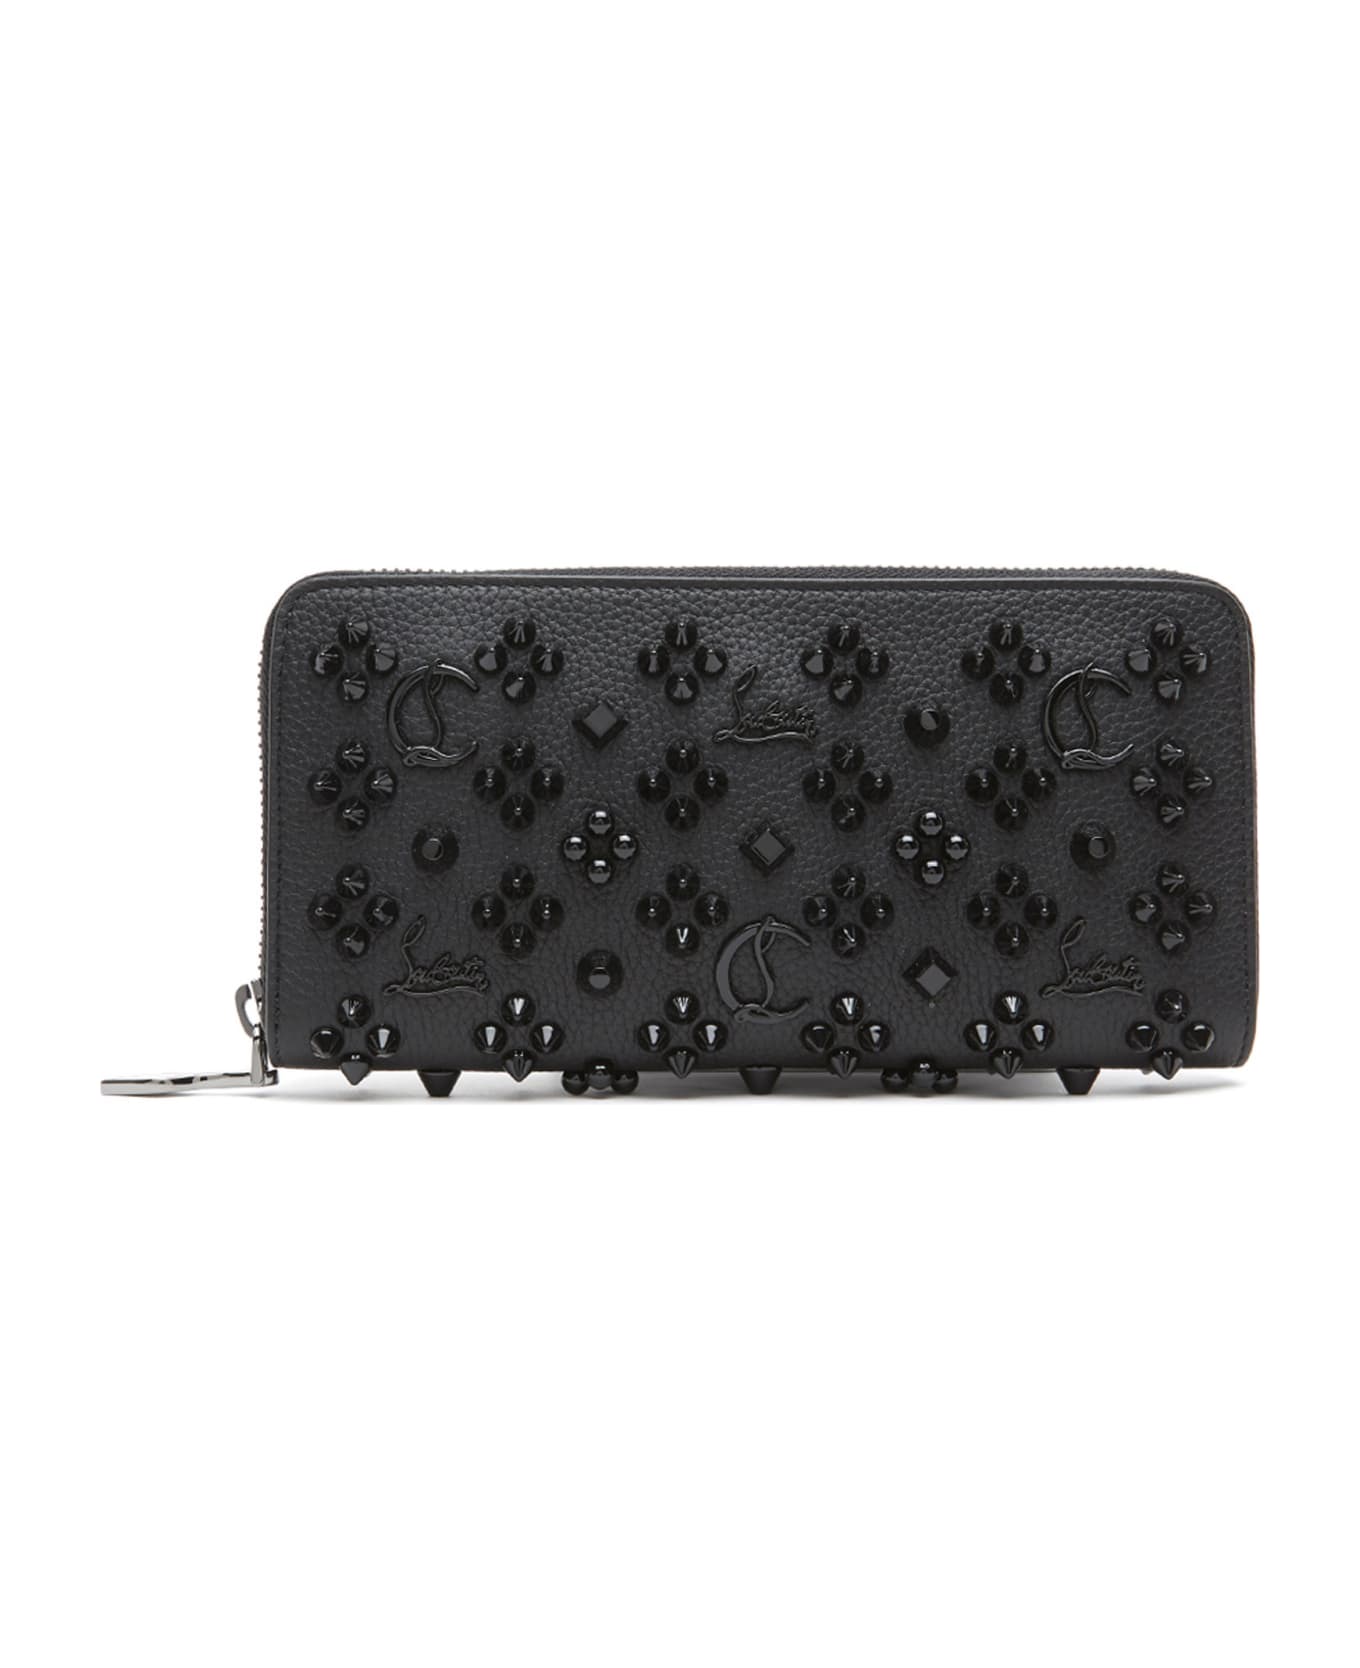 Christian Louboutin 'panettone' Wallet - Black   財布